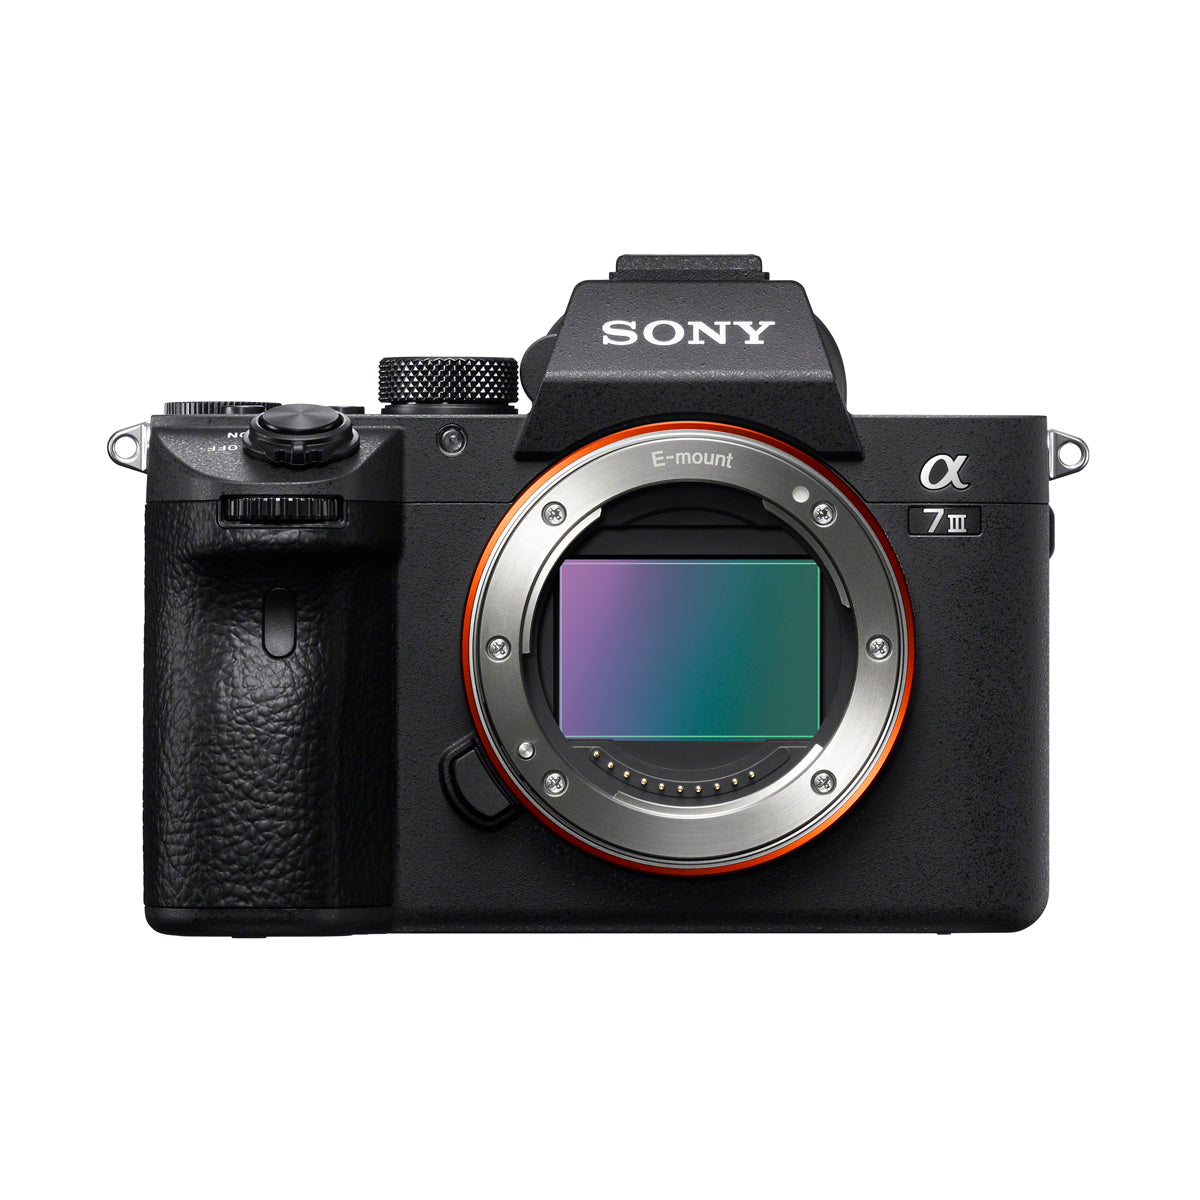 Sony Alpha a7 III with FE 28-70mm f3.5-5.6 OSS Lens Kit